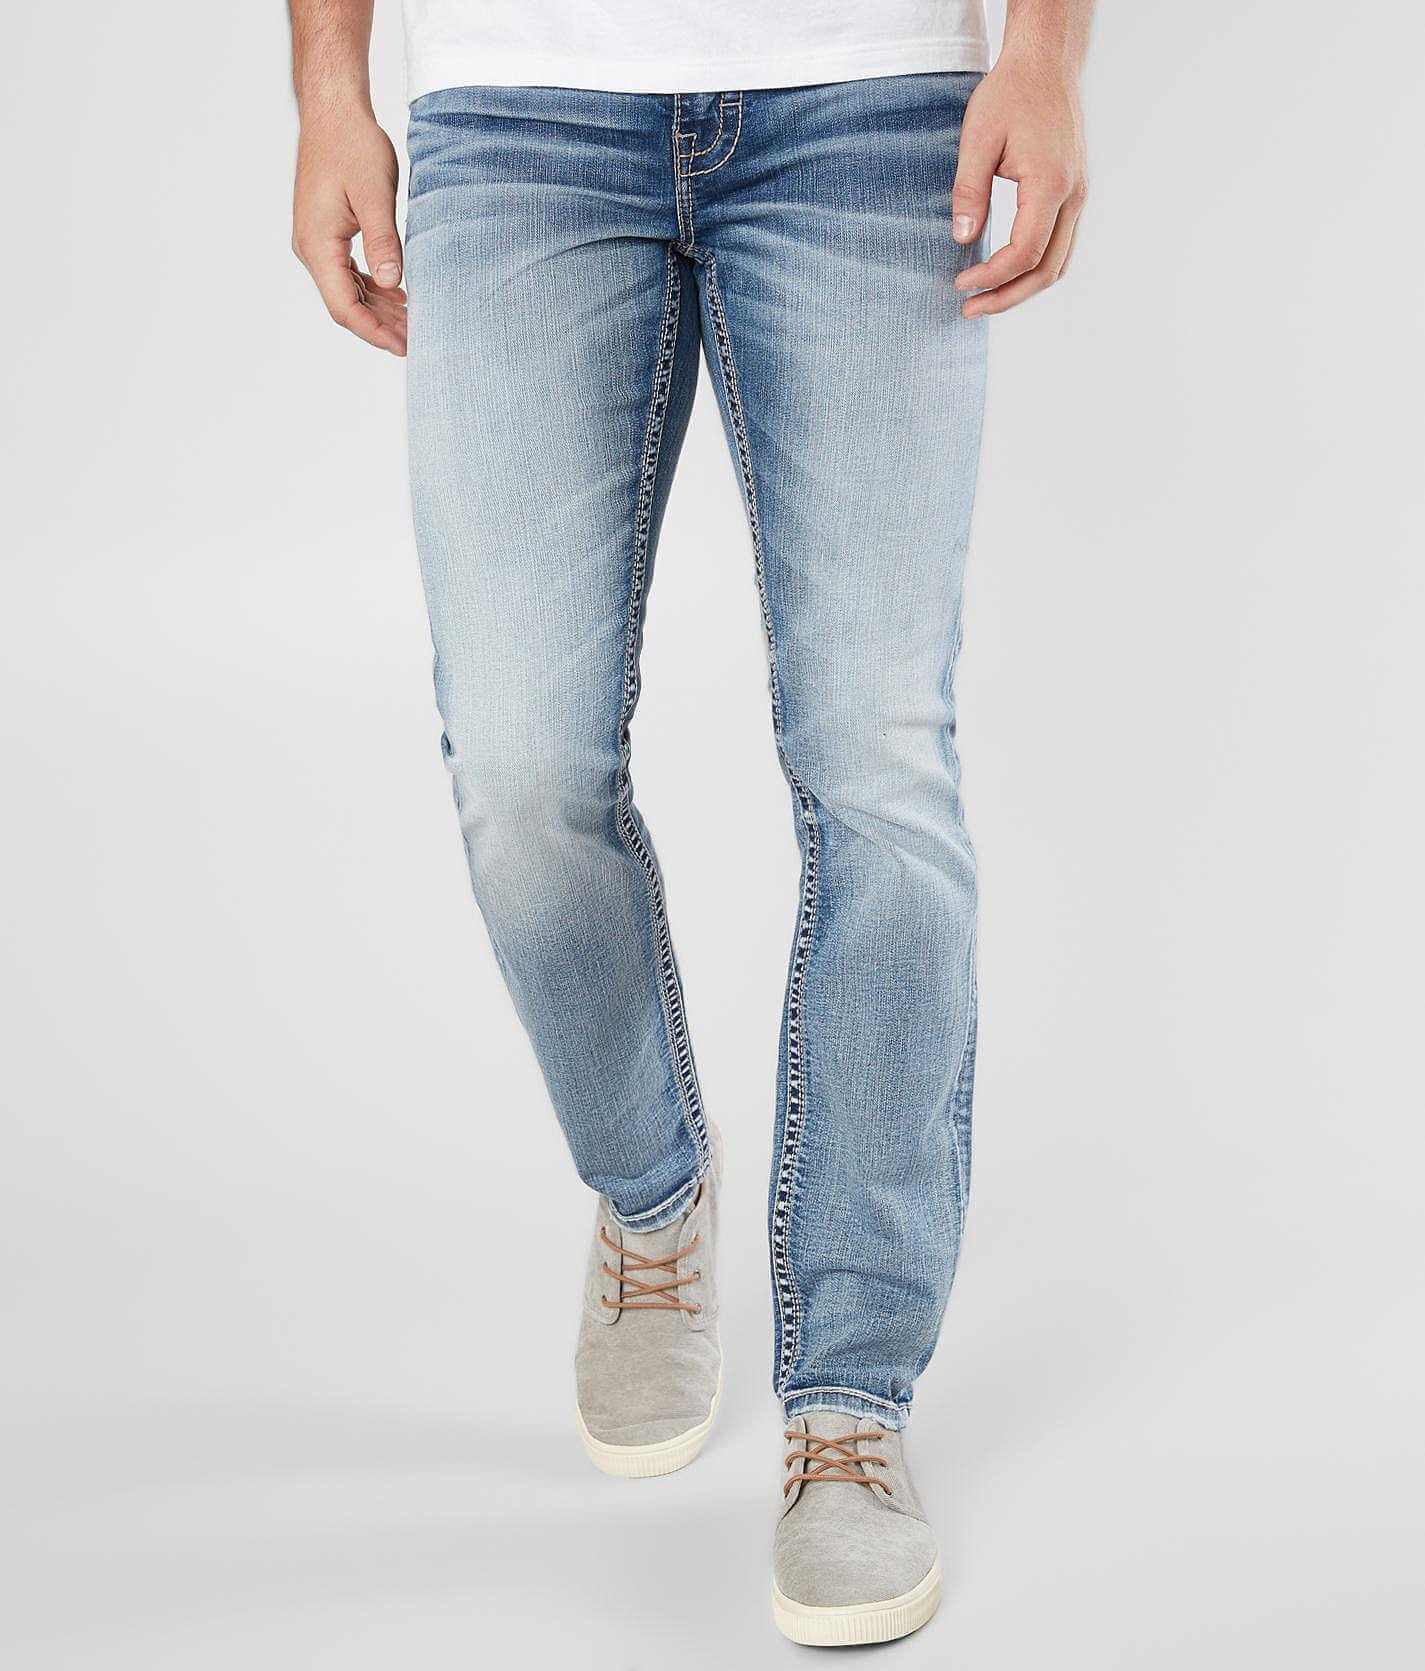 buckle skinny jeans mens